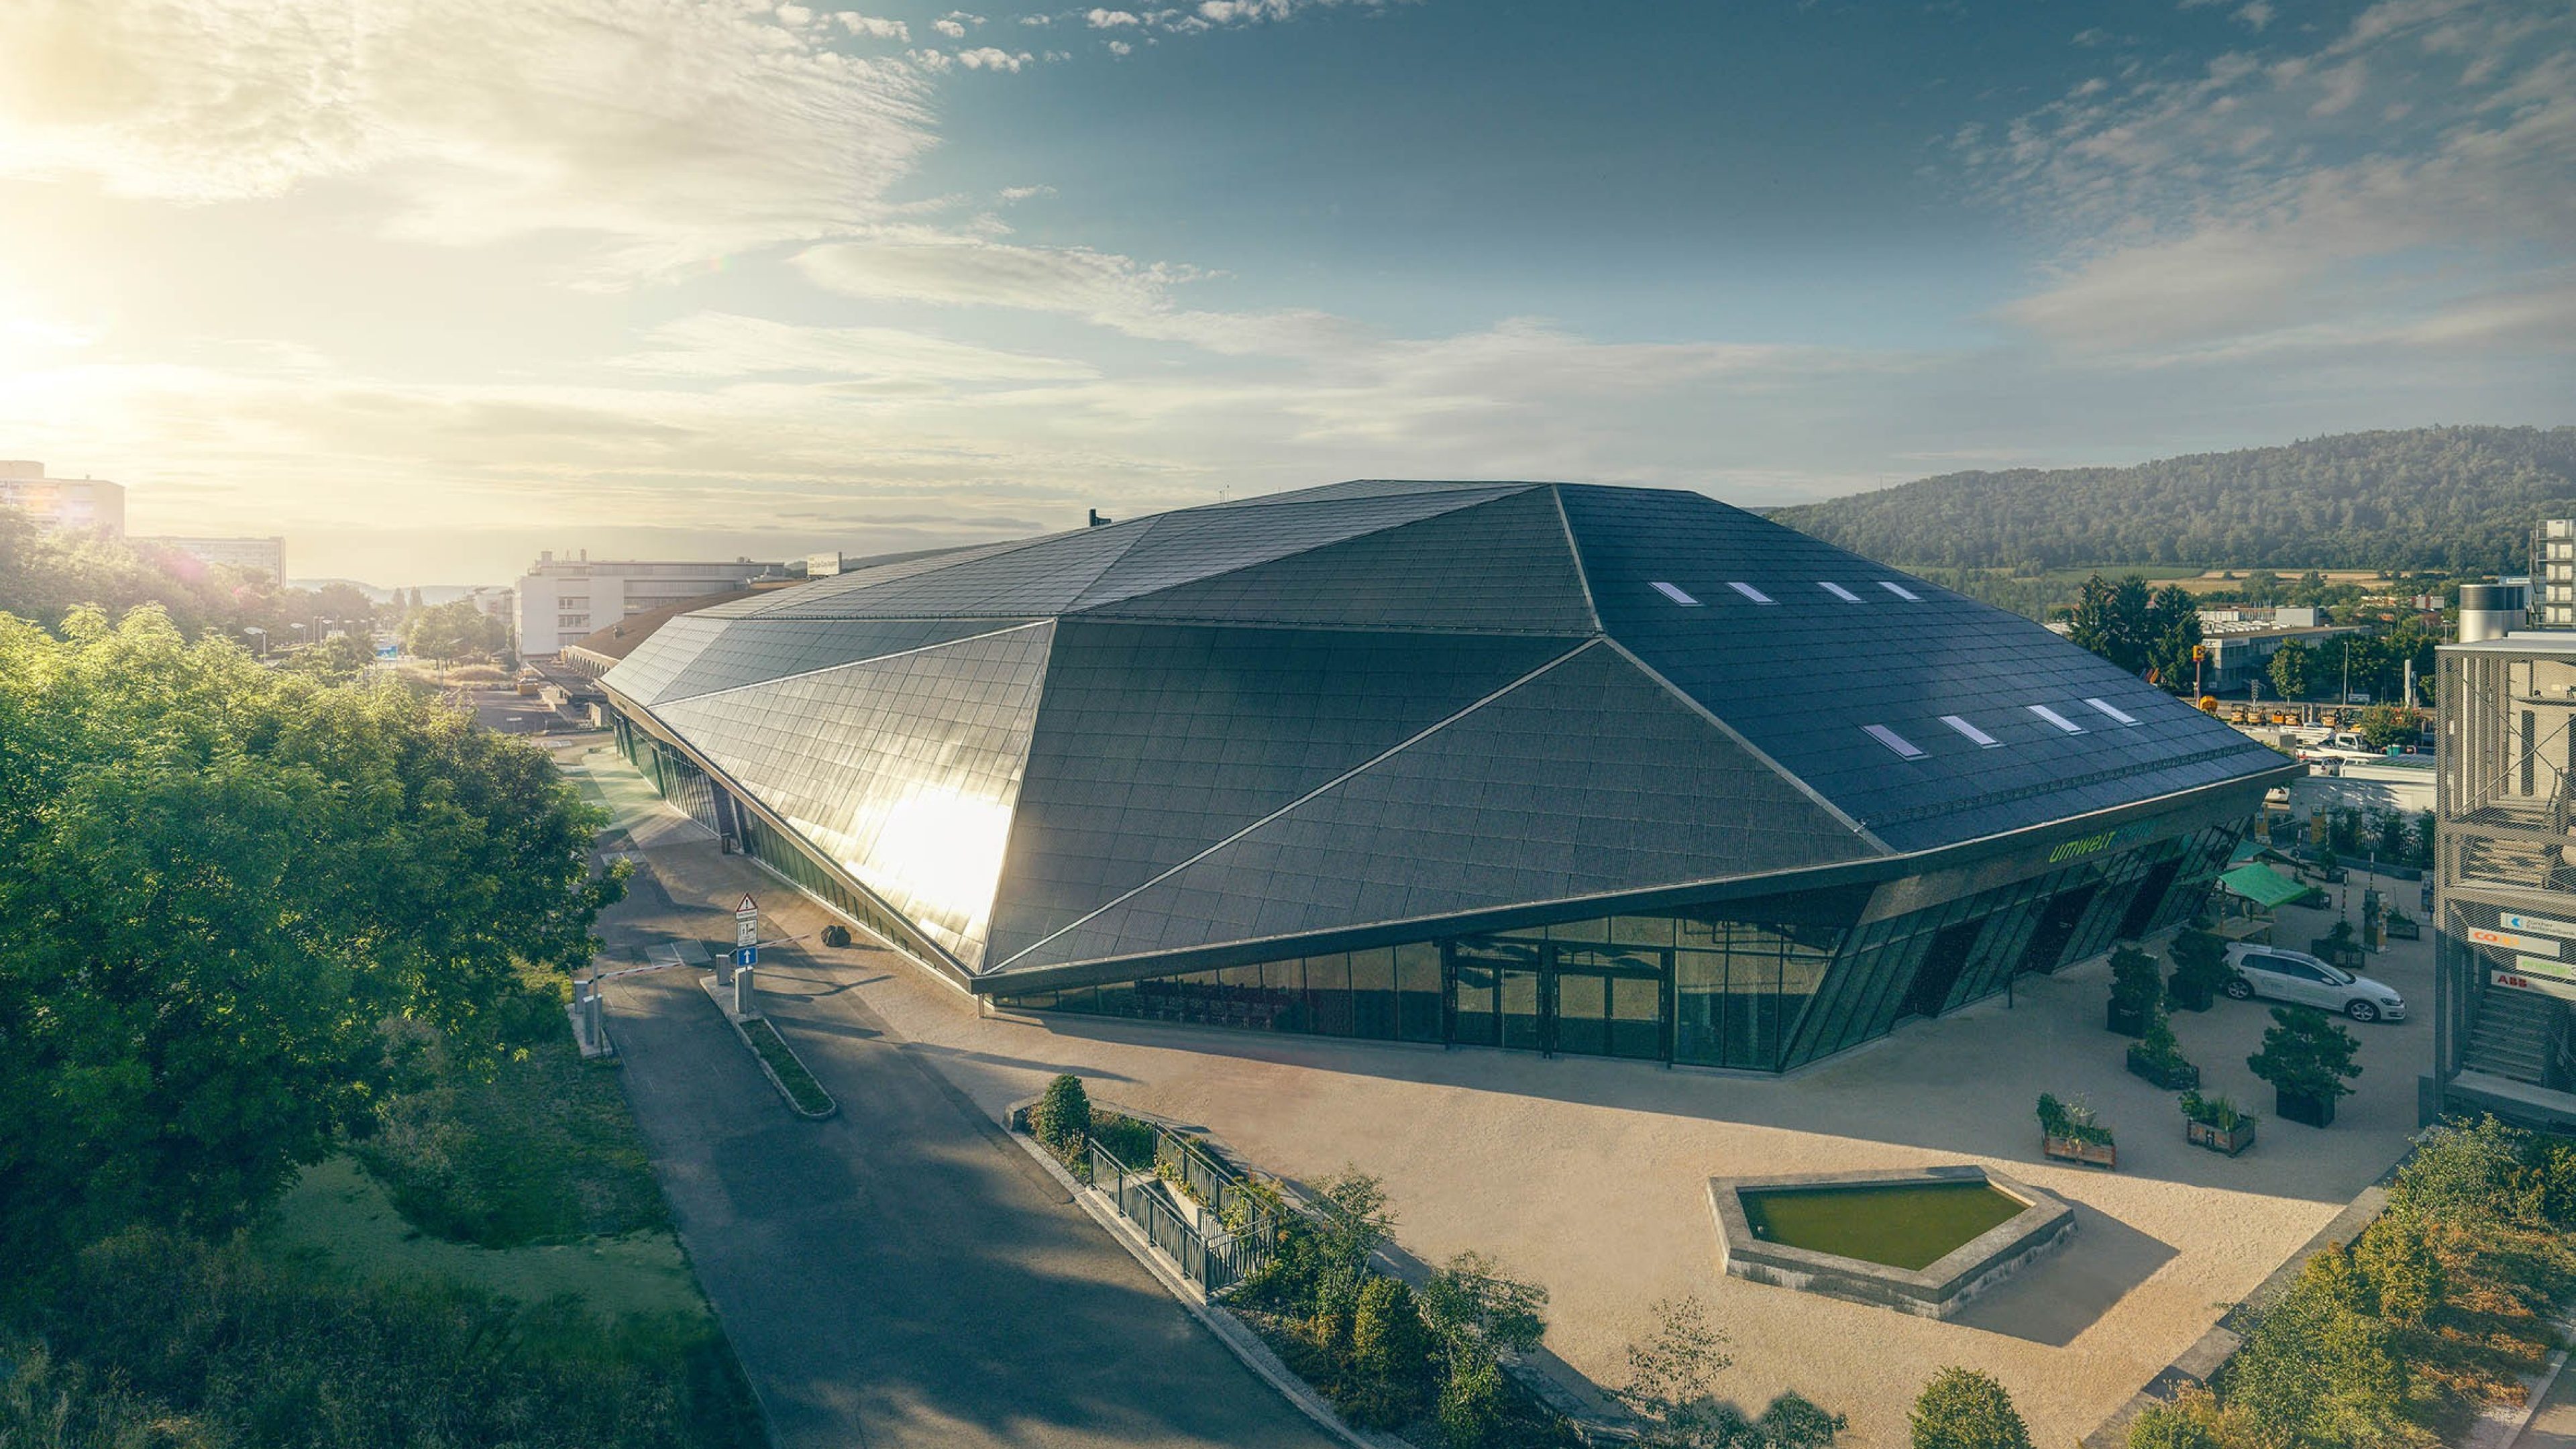 Vista dall'alto dell'Umwelt Arena con il suo grande tetto solare.